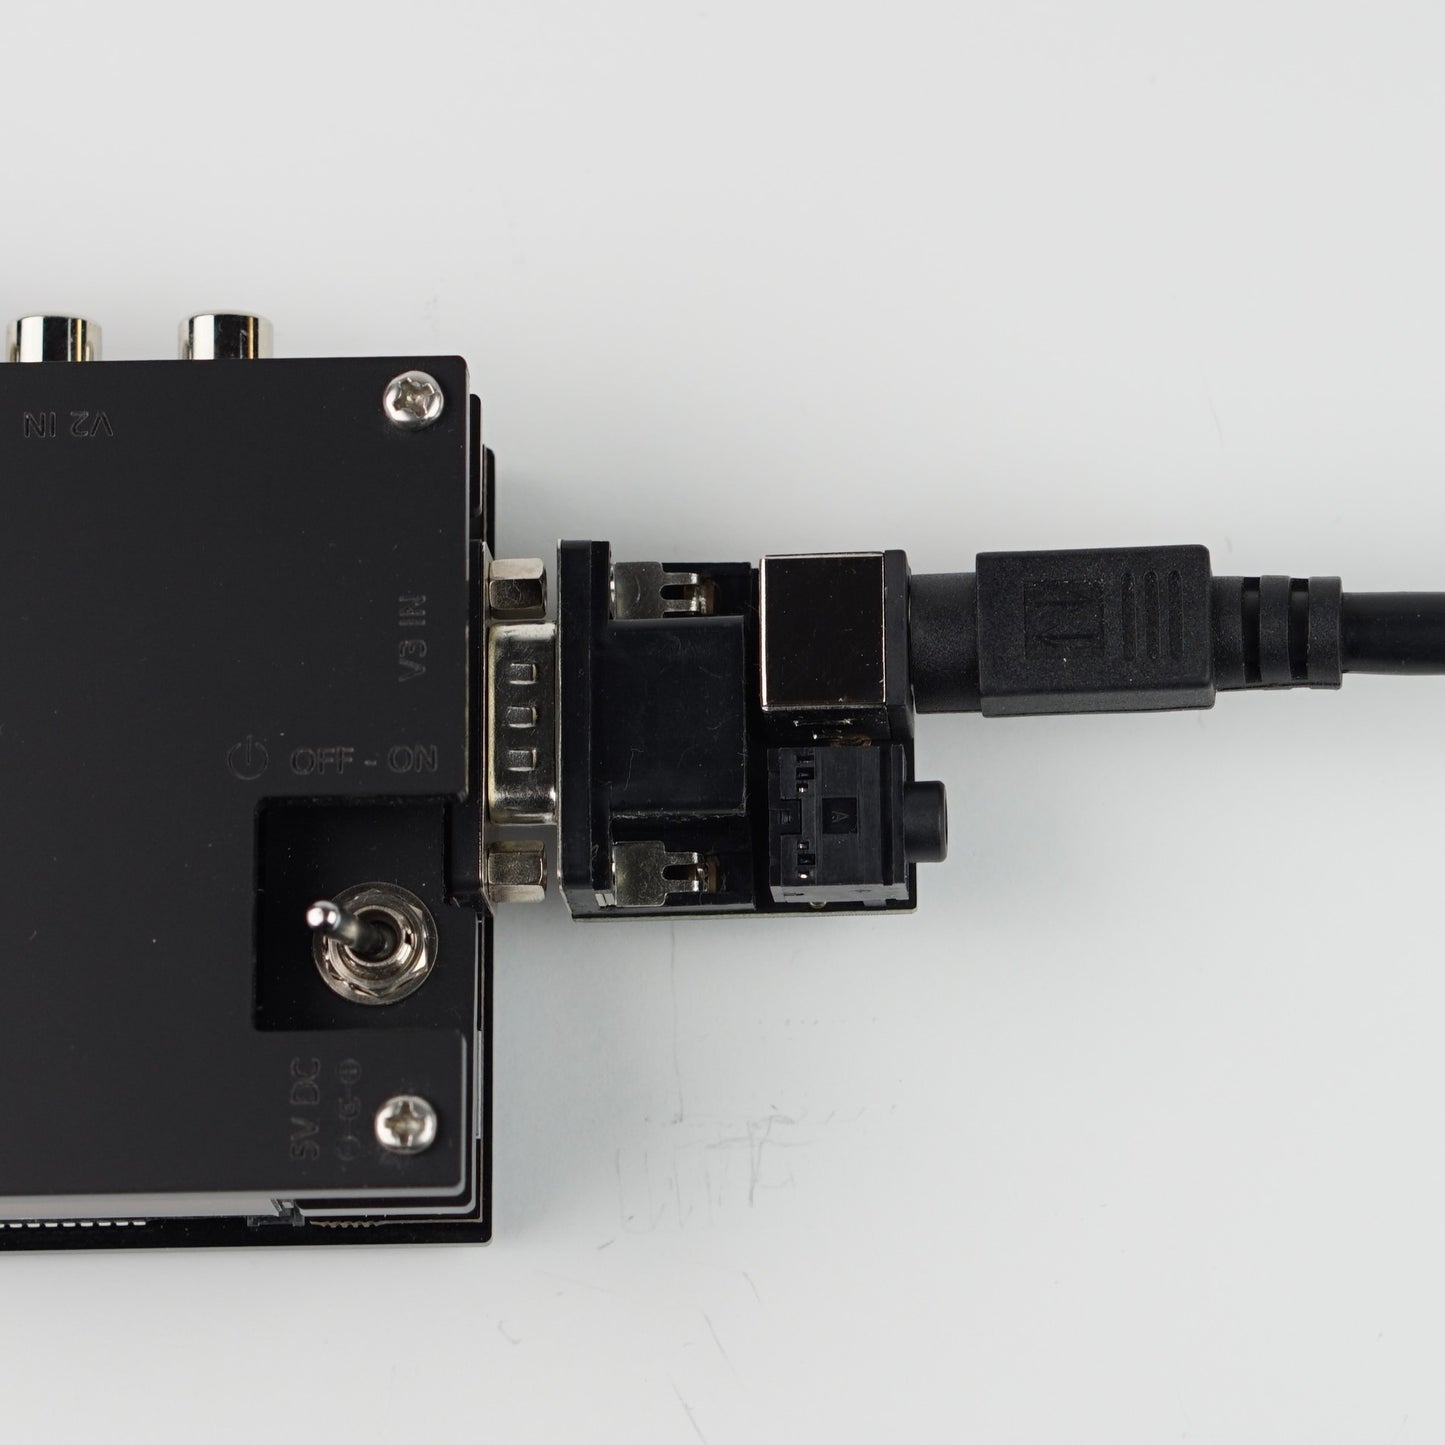 8 pin mini-DIN to HD-15 adapter